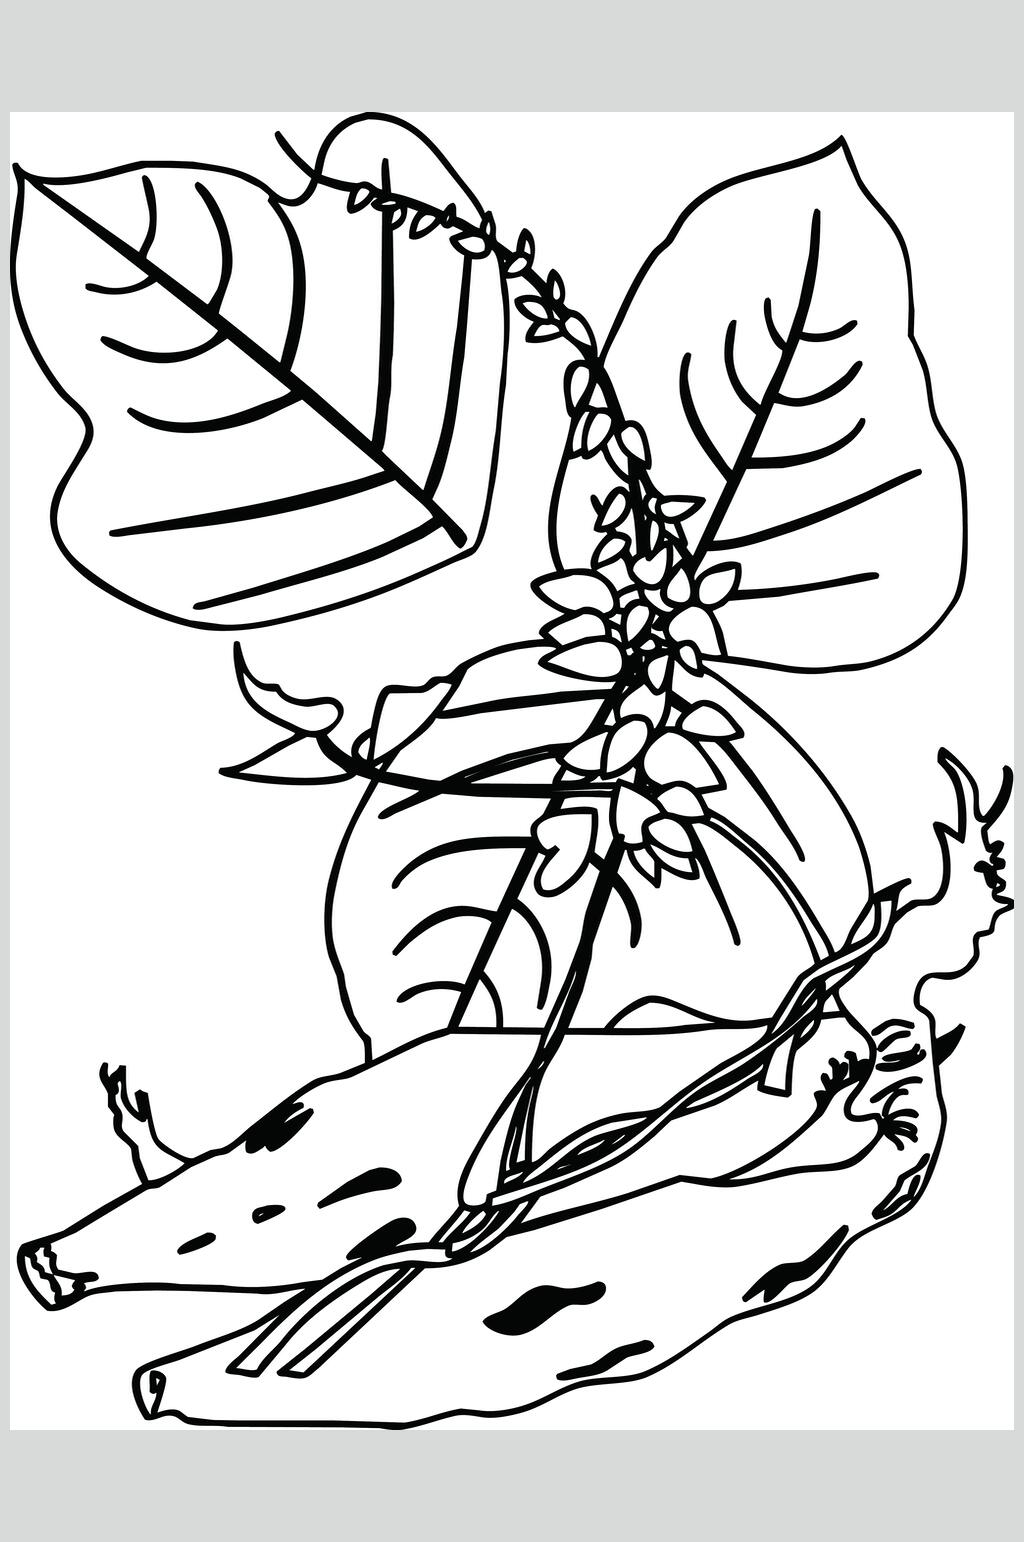 葛根植物手绘线稿矢量素材